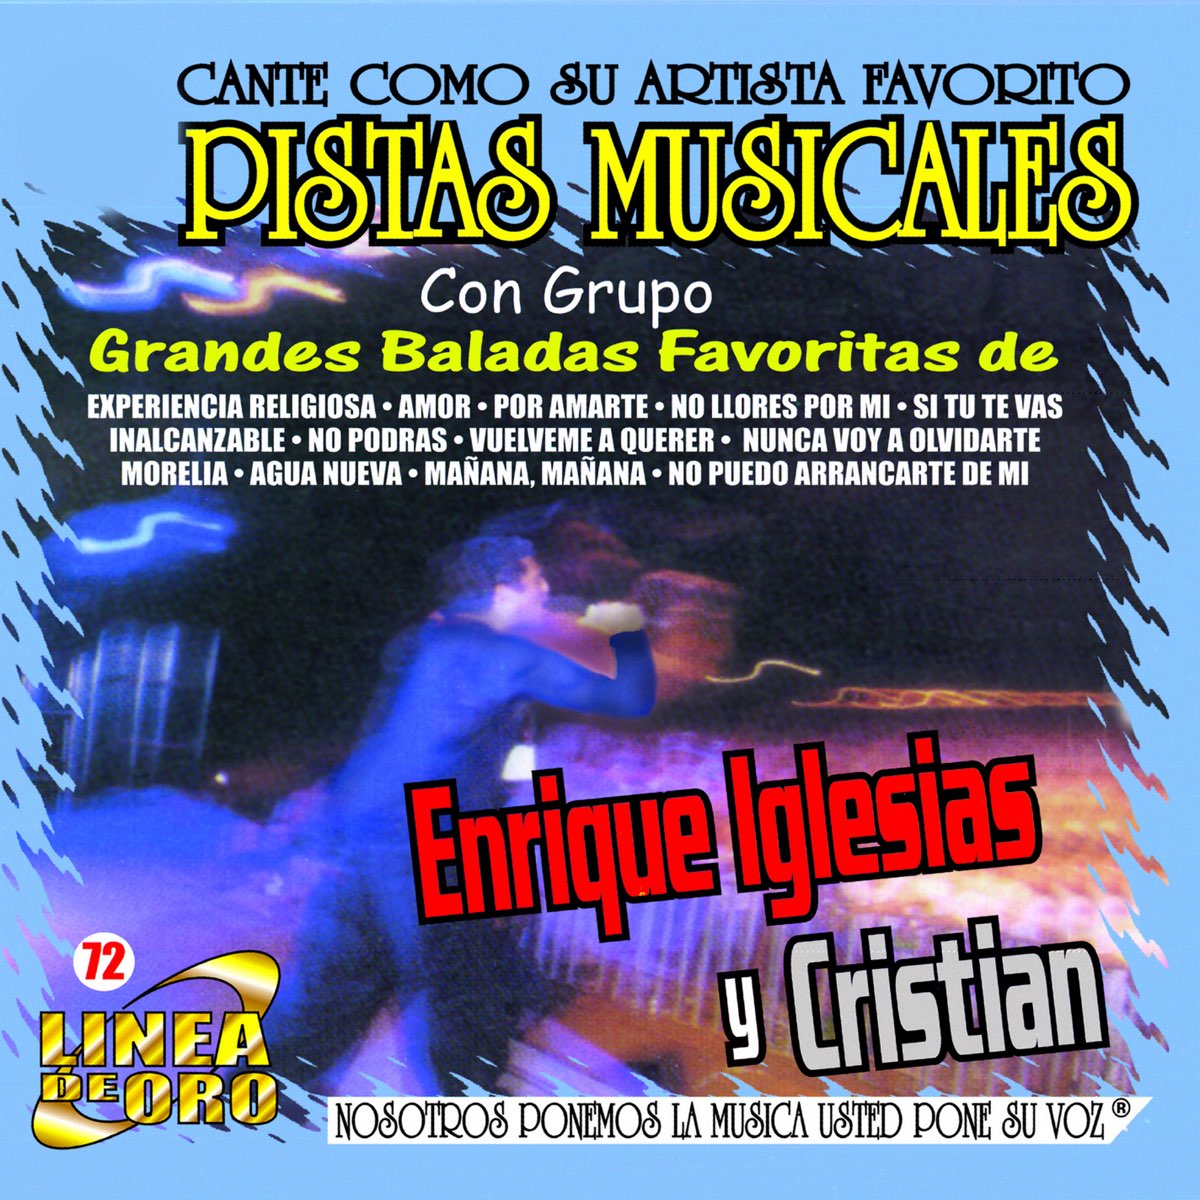 Pistas Musicales - Grandes Baladas Favoritas de Enrique Iglesias y Cristian  (Karaoke) de MMP en Apple Music